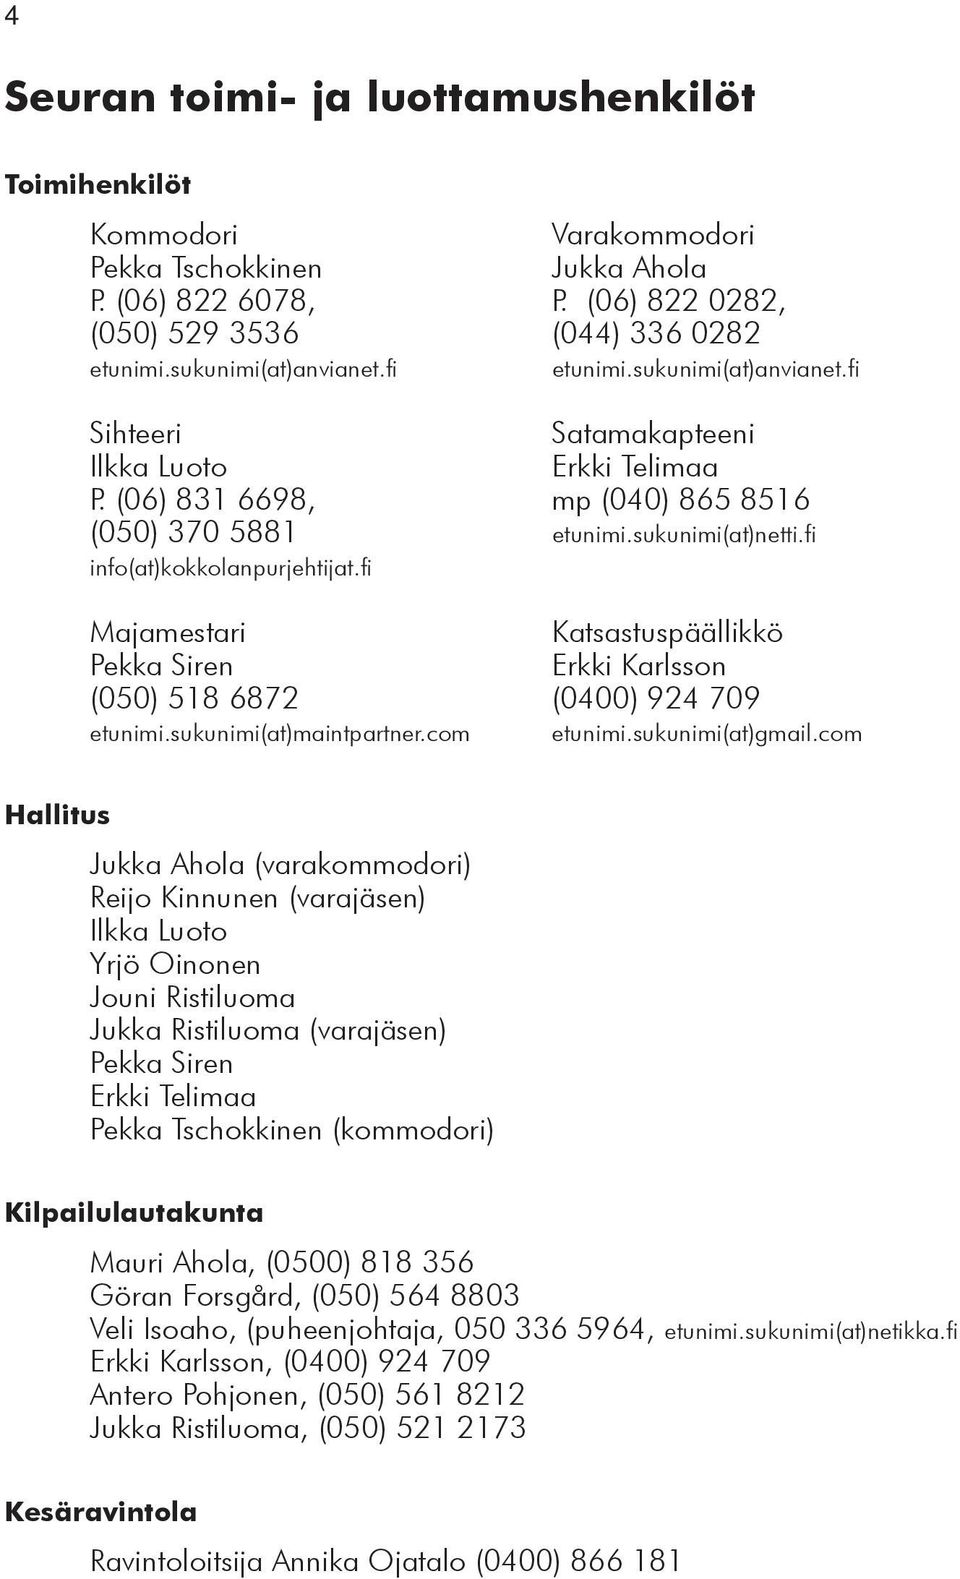 fi Majamestari Katsastuspäällikkö Pekka Siren Erkki Karlsson (050) 518 6872 (0400) 924 709 etunimi.sukunimi(at)maintpartner.com etunimi.sukunimi(at)gmail.